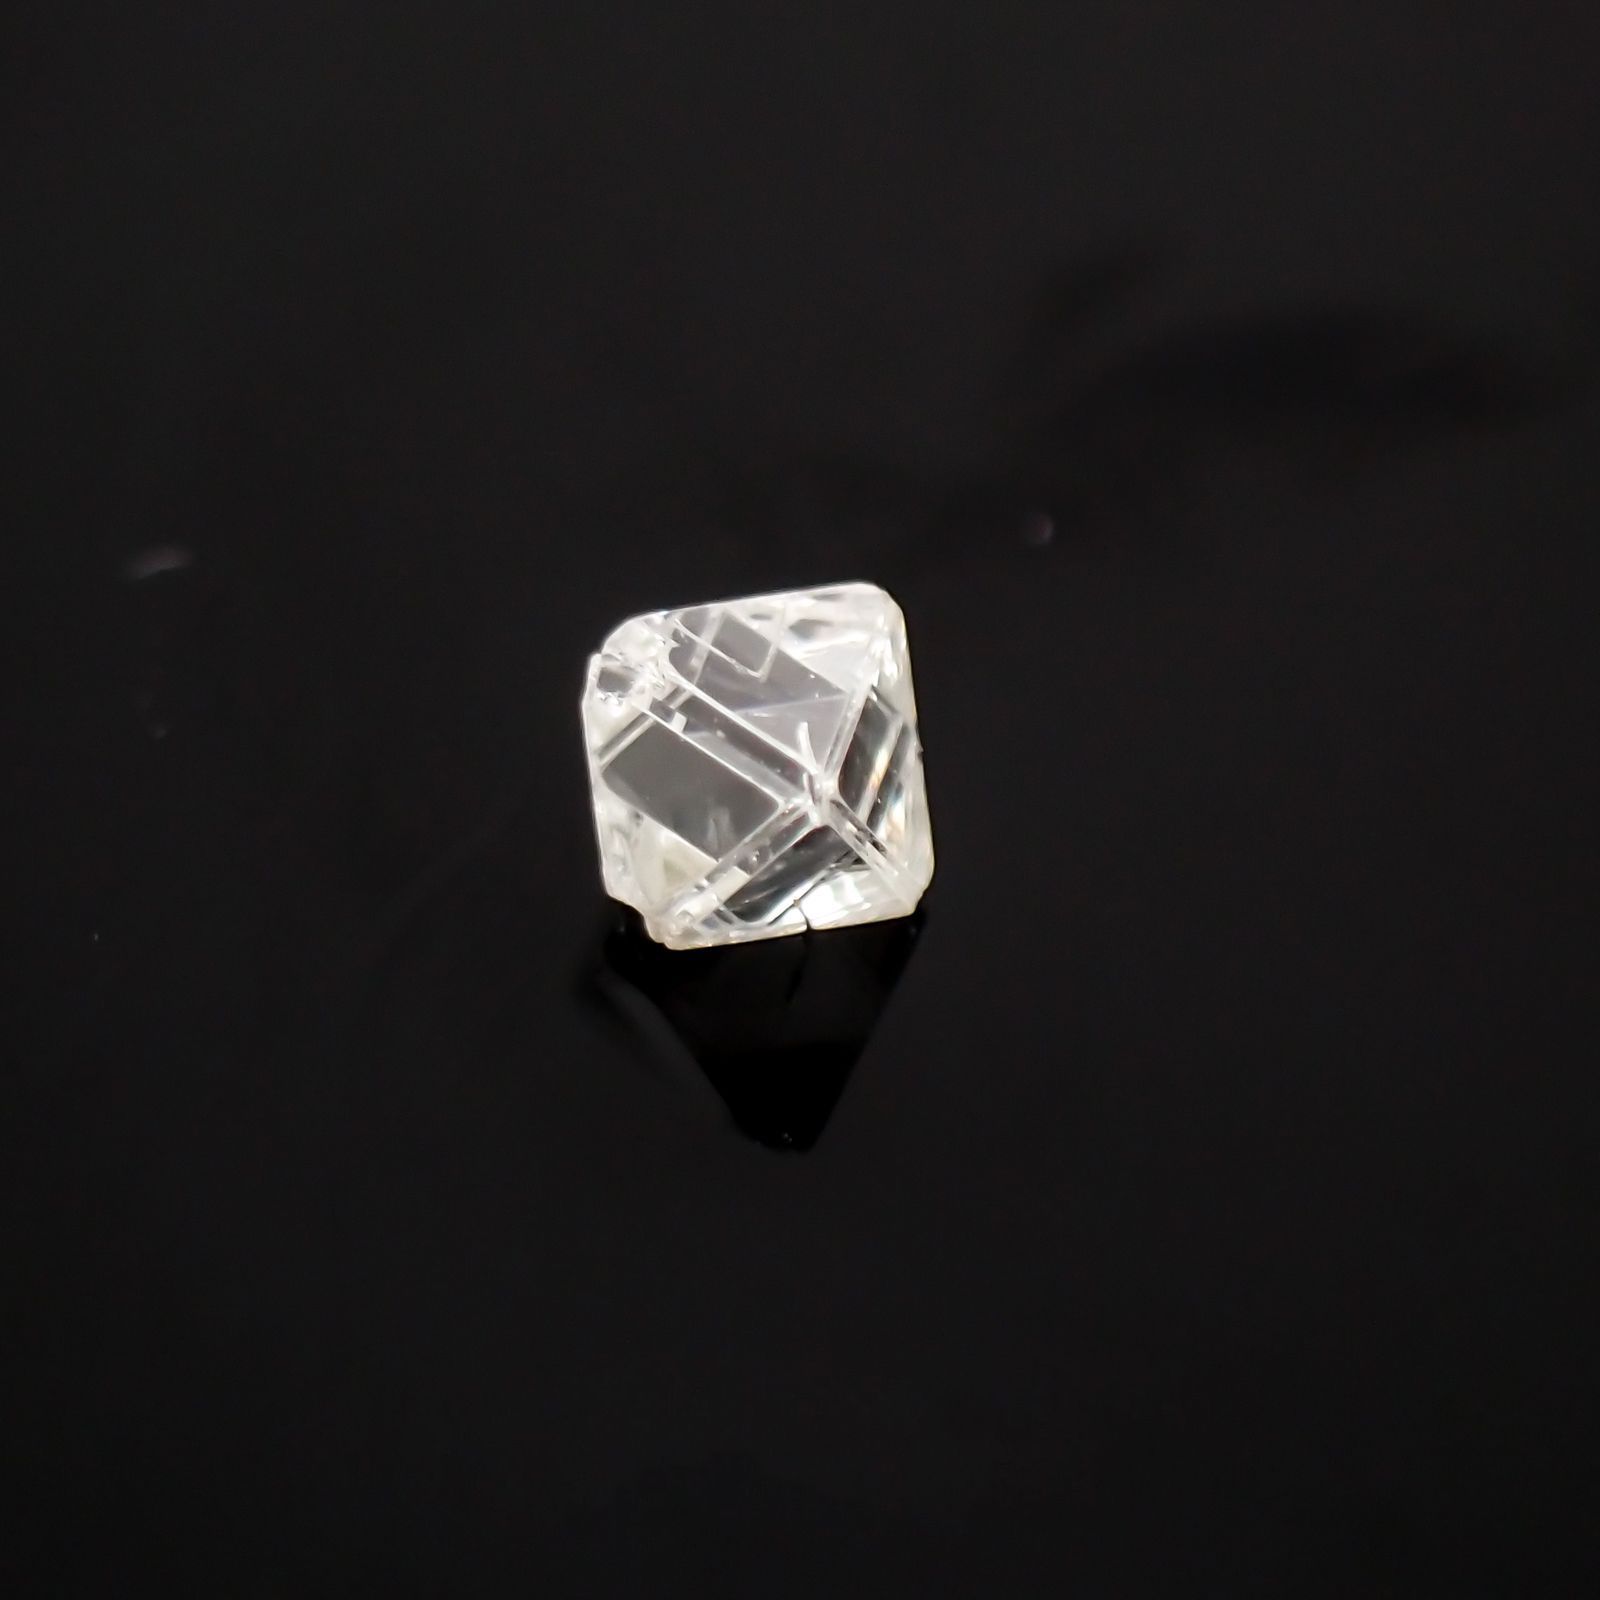 ソーヤブルダイヤモンド宝石名ダイアモンド ロシア産 原石・結晶